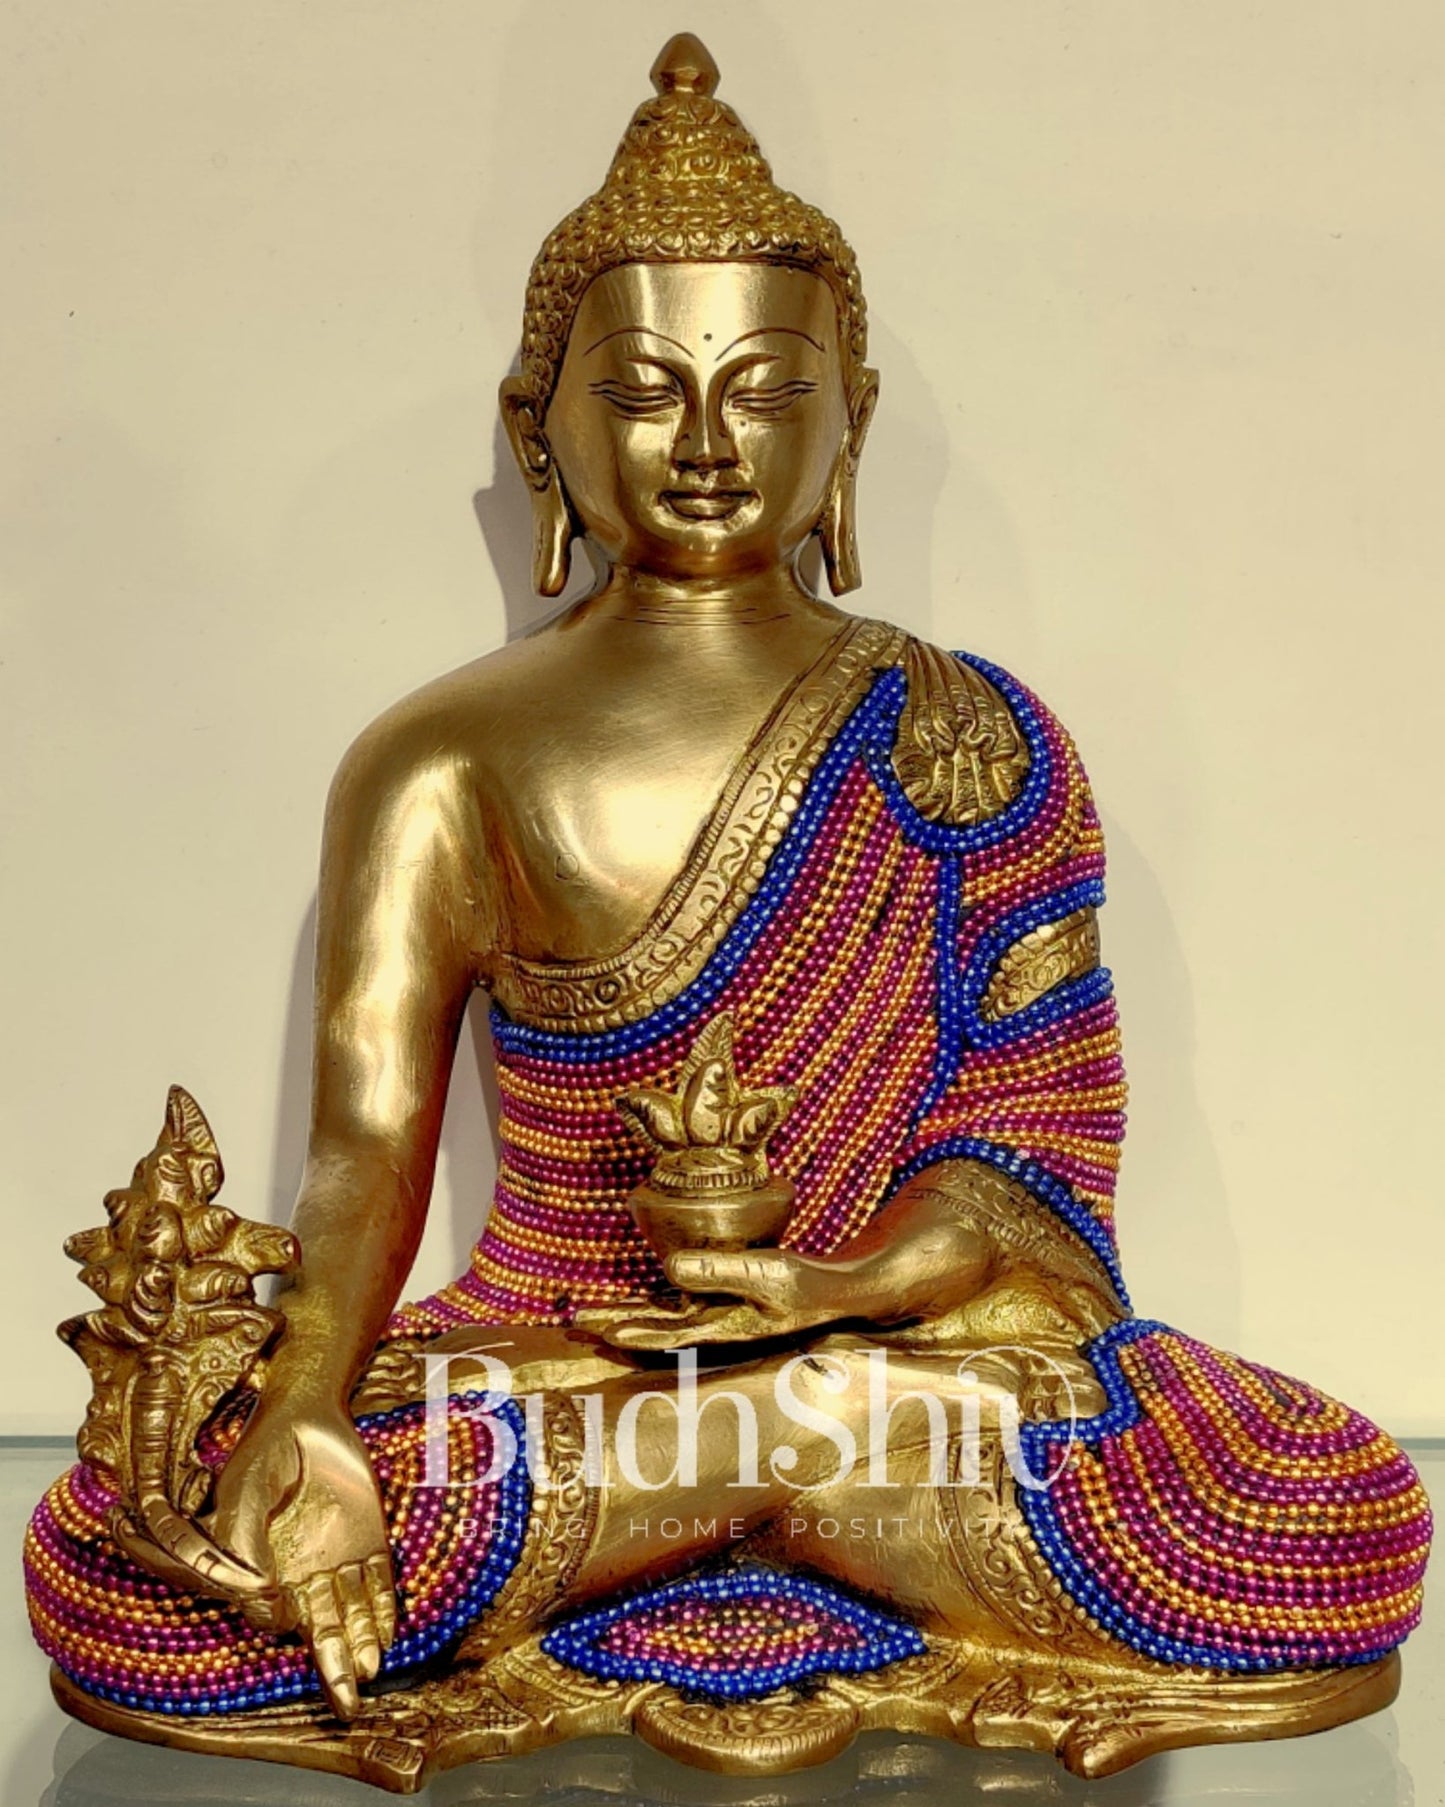 Unique Chain Beadwork: Buddha Statue in Fine Brass 10" - Budhshiv.com